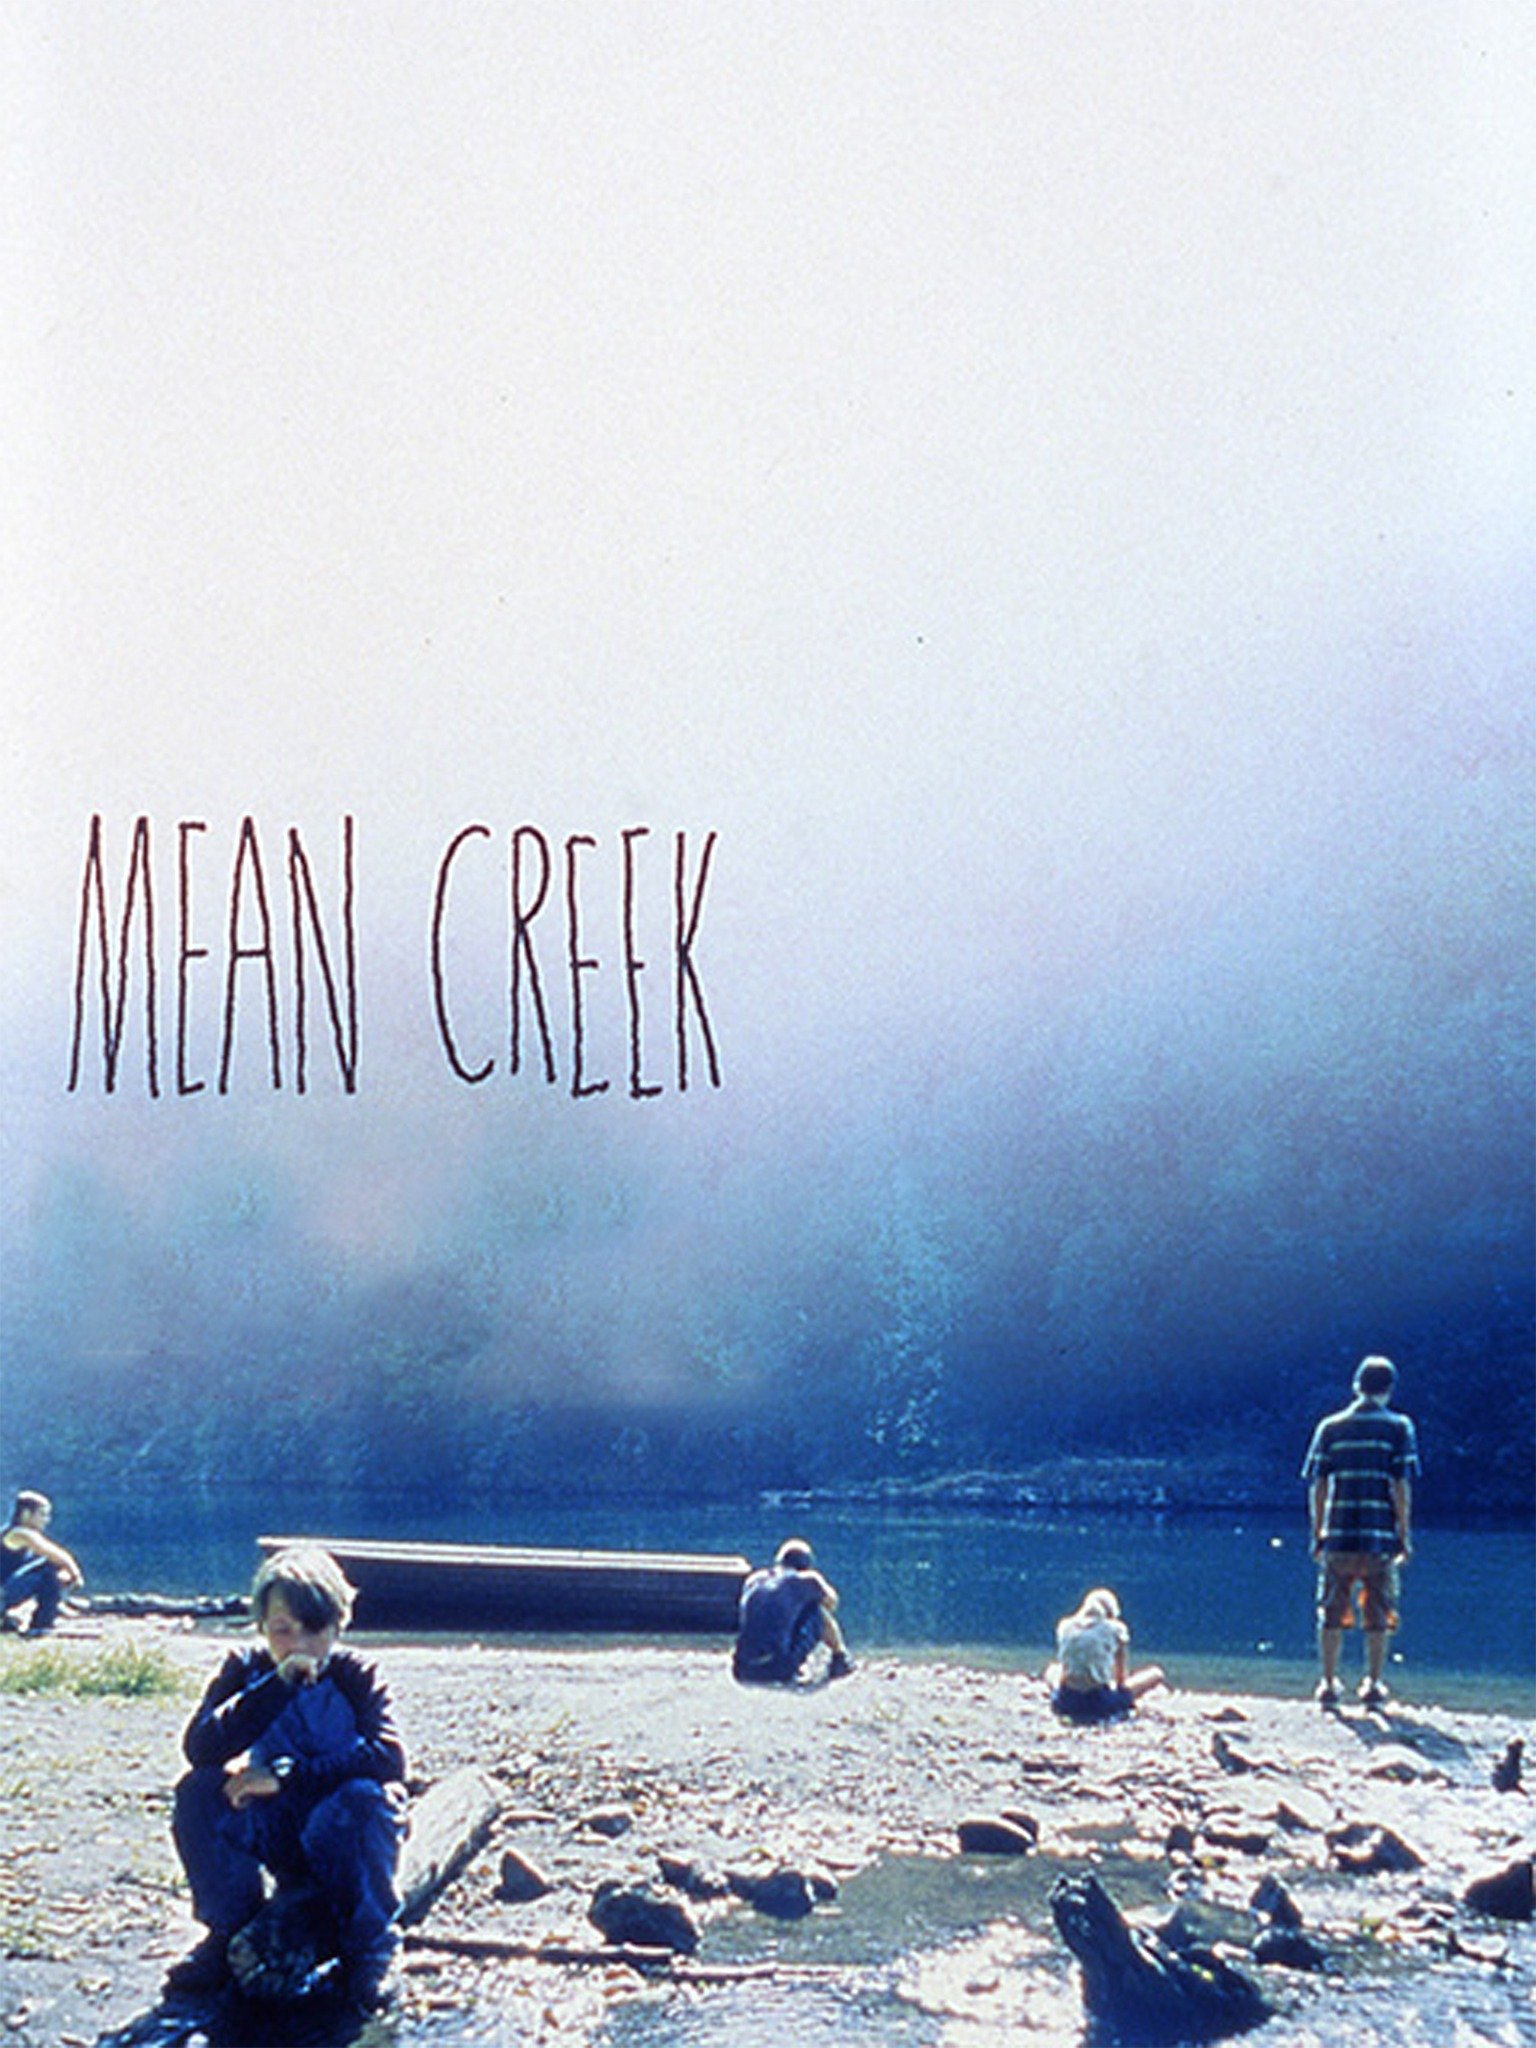 Mean Creek photo